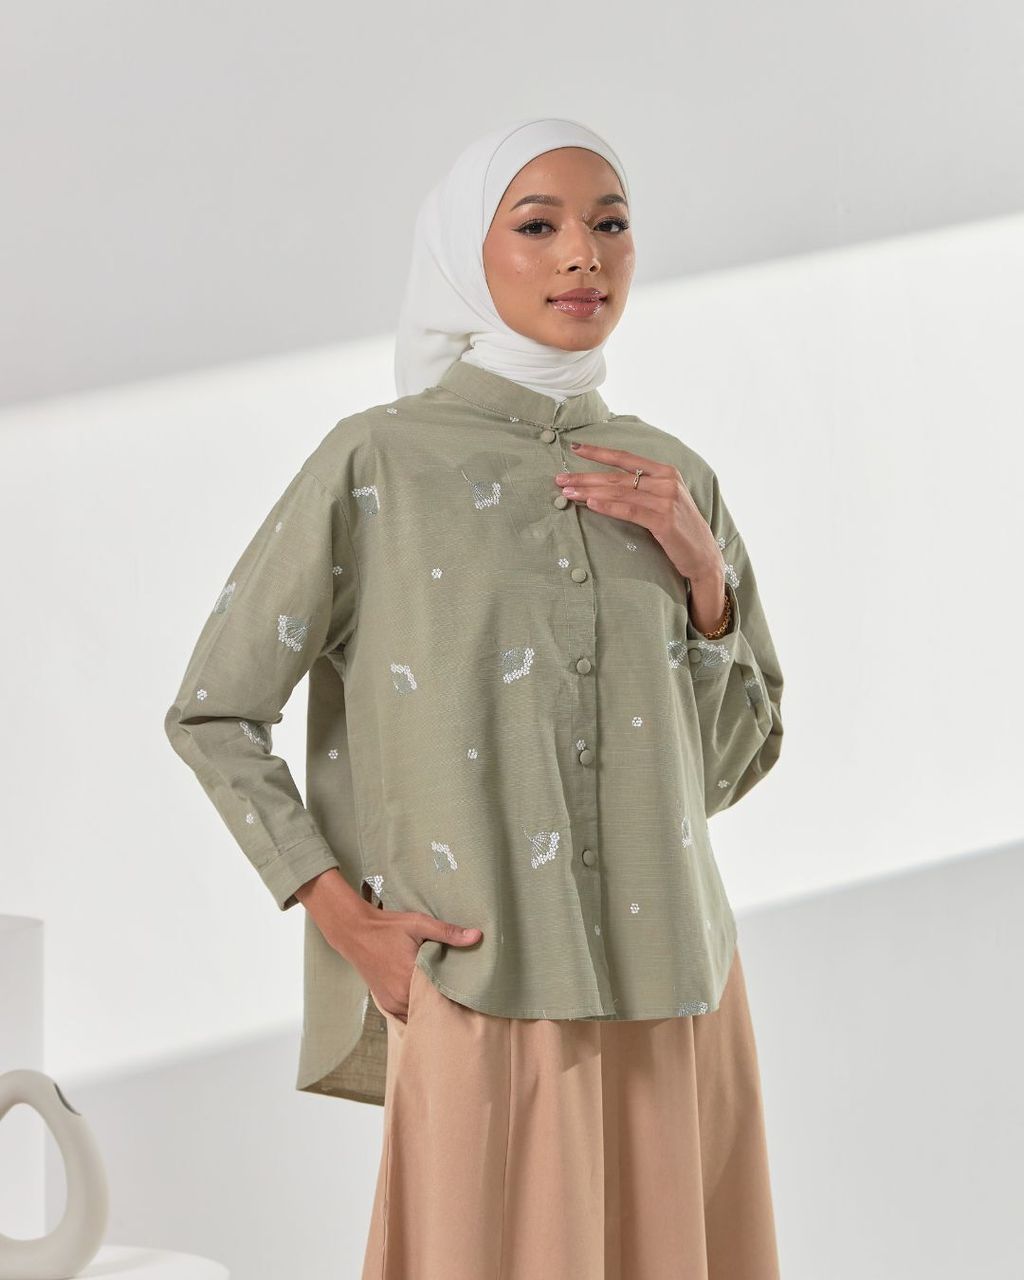 haura-wear-estelle-blouse-lengan panjang-kemeja labuh-baju labuh-tunic-kaftan-midi-dress-blouse-shirt-long-sleeve-baju-muslimah-baju-perempuan-shirt-blouse-baju (1)